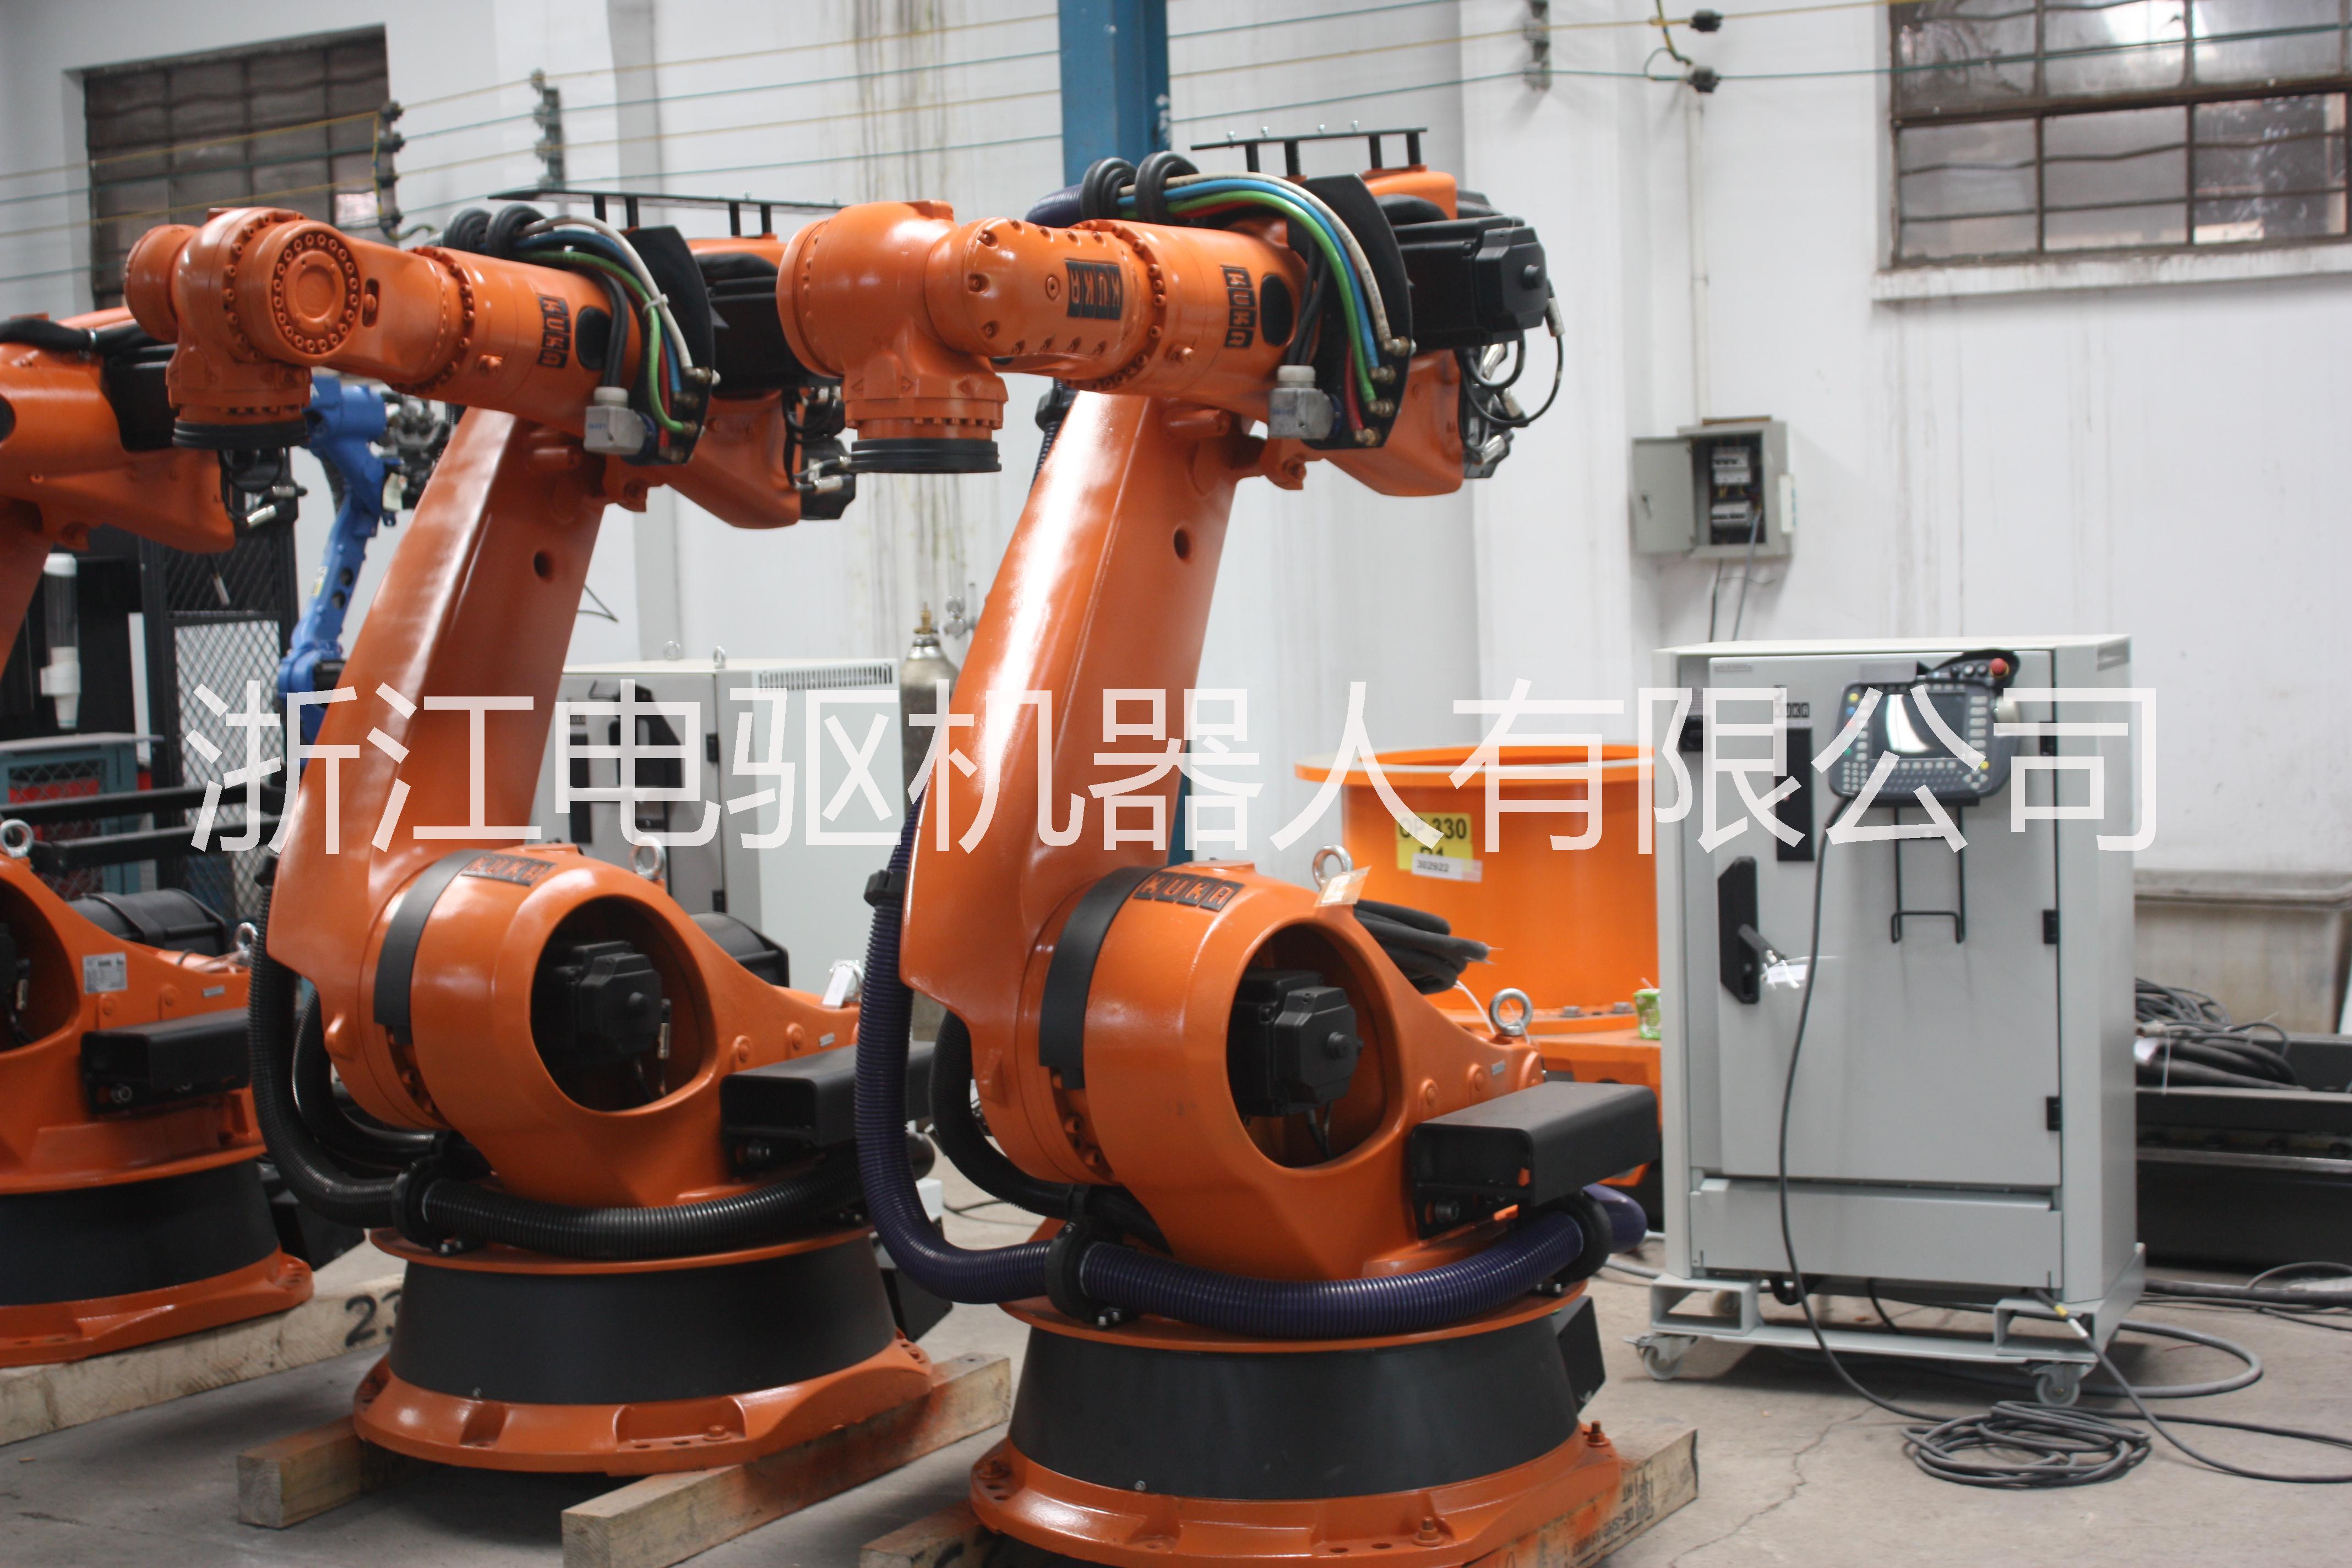 供应KUKA 210-2 200，浙江电驱供应六轴二手供应机器人 二手库卡机器人 二手六轴机器人